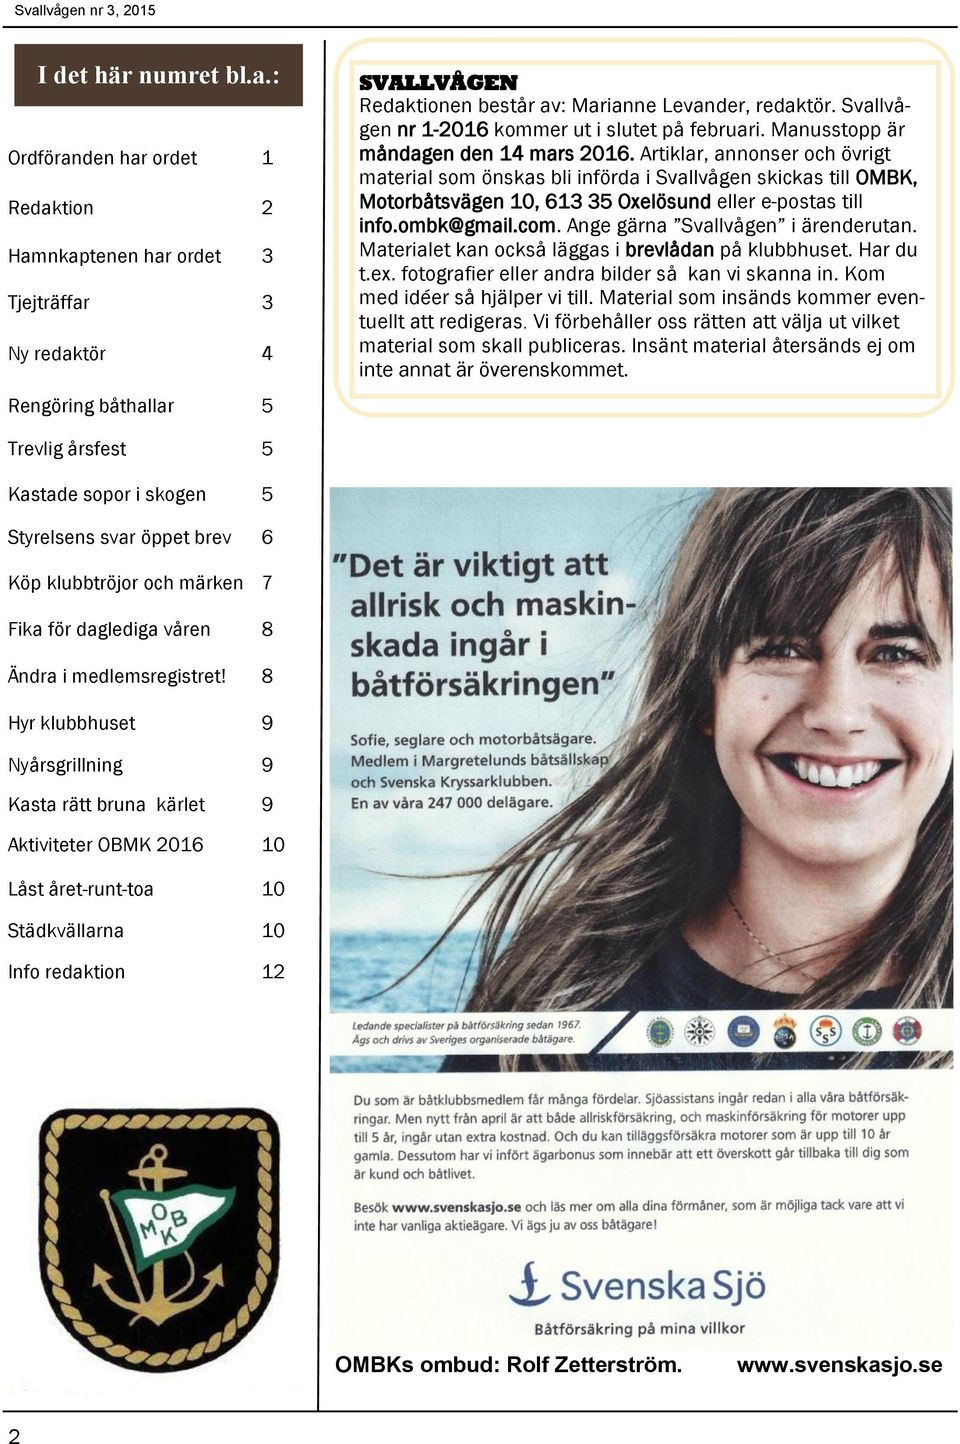 Artiklar, annonser och övrigt material som önskas bli införda i Svallvågen skickas till OMBK, Motorbåtsvägen 10, 613 35 Oxelösund eller e-postas till info.ombk@gmail.com.